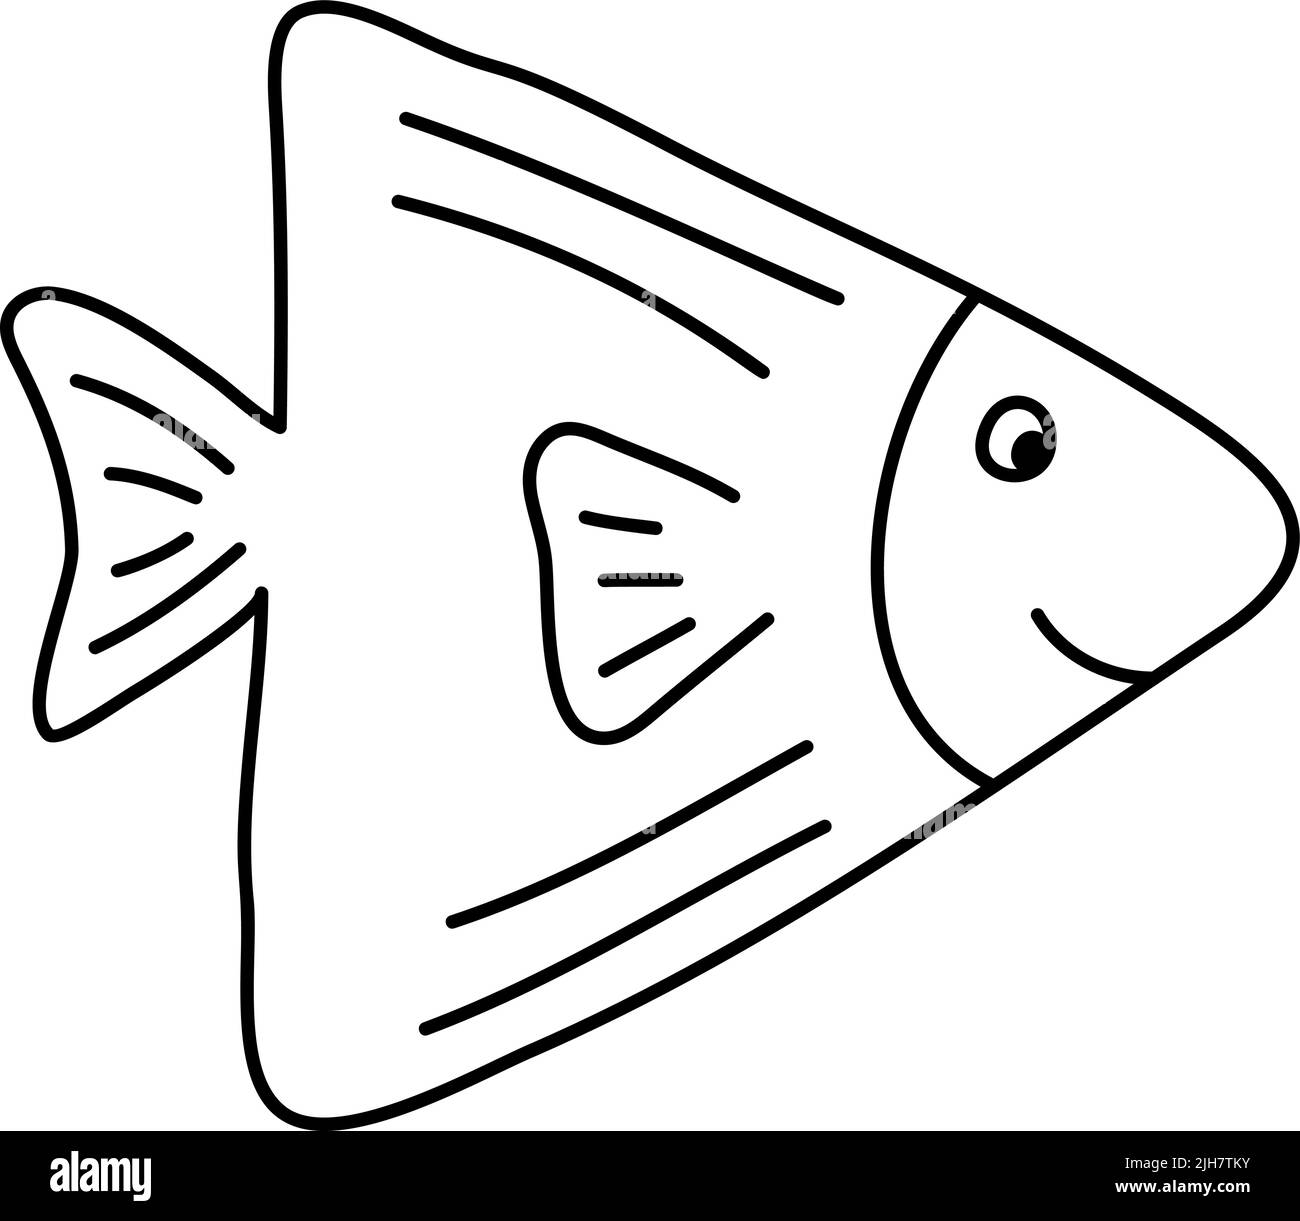 Imagen de garabatos dibujados a mano de peces de estilo escandinavo monolino. Imagen para etiqueta, web, icono, postal, decoración. Alegre infantil, lindo Ilustración del Vector